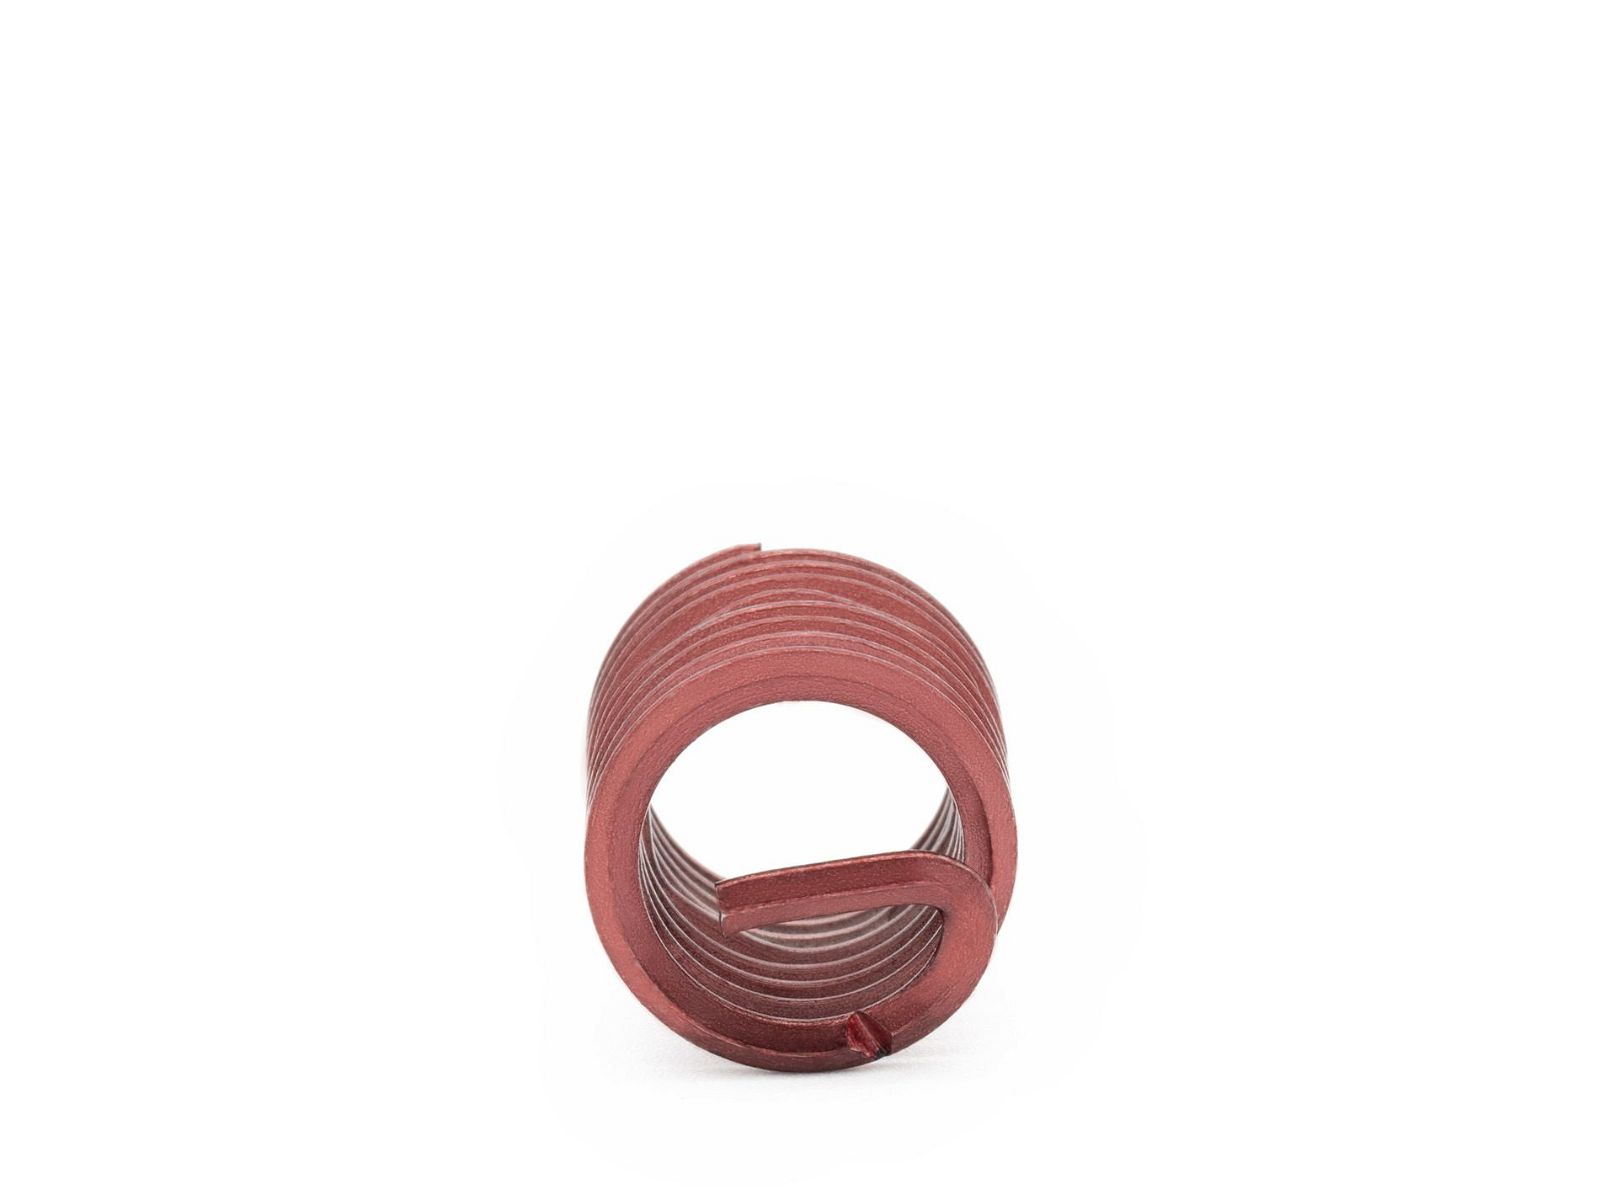 BaerCoil Wire Thread Inserts UNF 7/16 x 20 - 1.5 D (16.67 mm) - screw grip (screw locking) - 100 pcs.